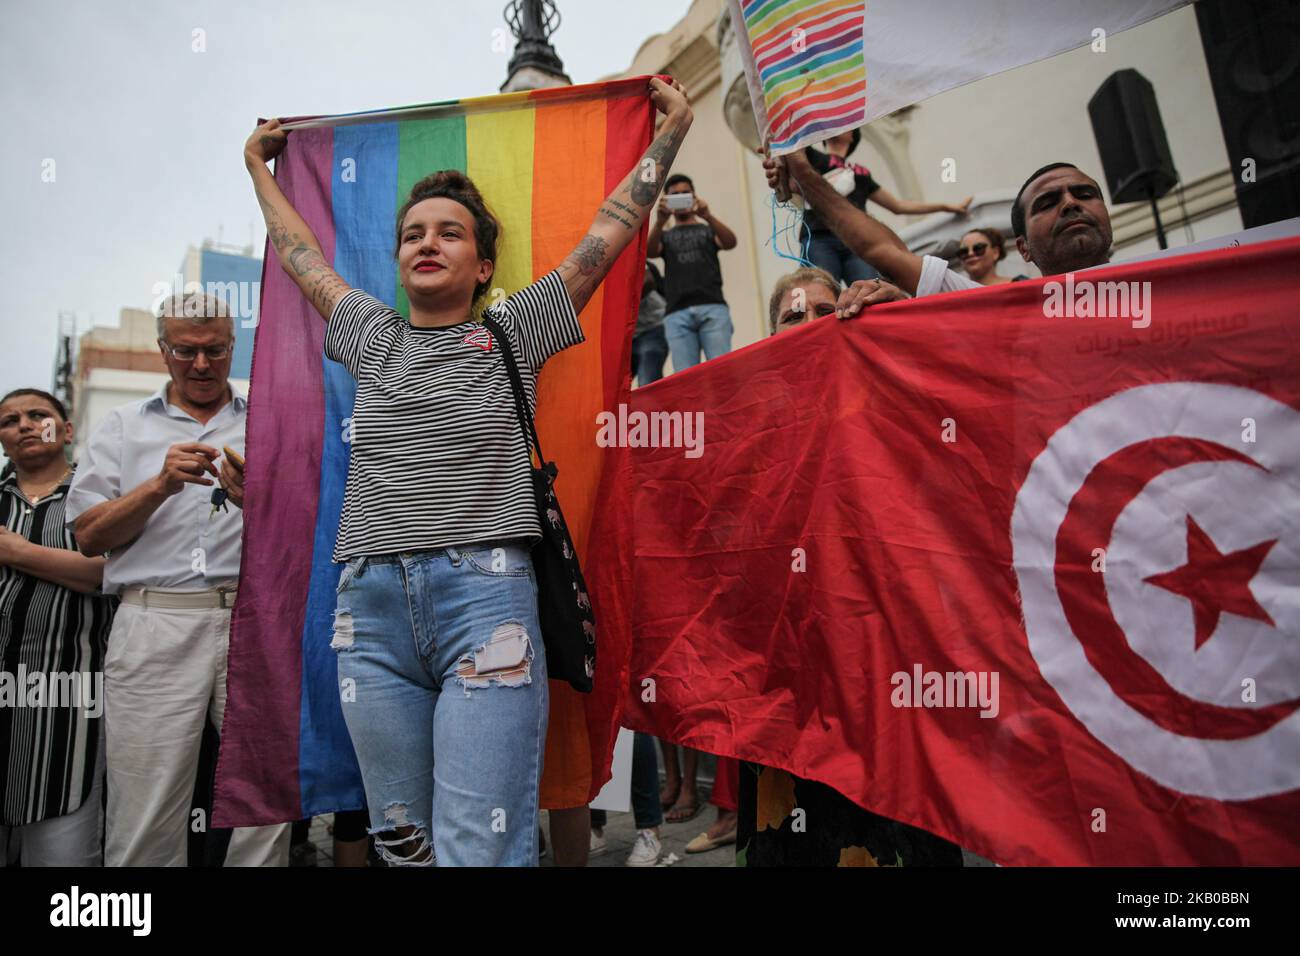 Amina Sboui, ex Femen alza la bandiera arcobaleno mentre partecipa a una manifestazione tenutasi durante la celebrazione della Giornata Nazionale della Donna in avenue Habib Bourguiba a Tunisi, Tunisia, il 13 agosto 2018. I manifestanti hanno chiesto la parità di genere, la parità di successione per le donne, i diritti delle LGBT e i diritti delle donne tunisine. I manifestanti hanno protestato anche contro il partito islamico Ennahda e hanno espresso il loro sostegno al Comitato per le libertà individuali e l'uguaglianza (COLIBE). All'inizio della giornata, il presidente tunisino Beji Coid Essebsi ha annunciato che verrà presentato il disegno di legge sulla parità di successione per le donne Foto Stock